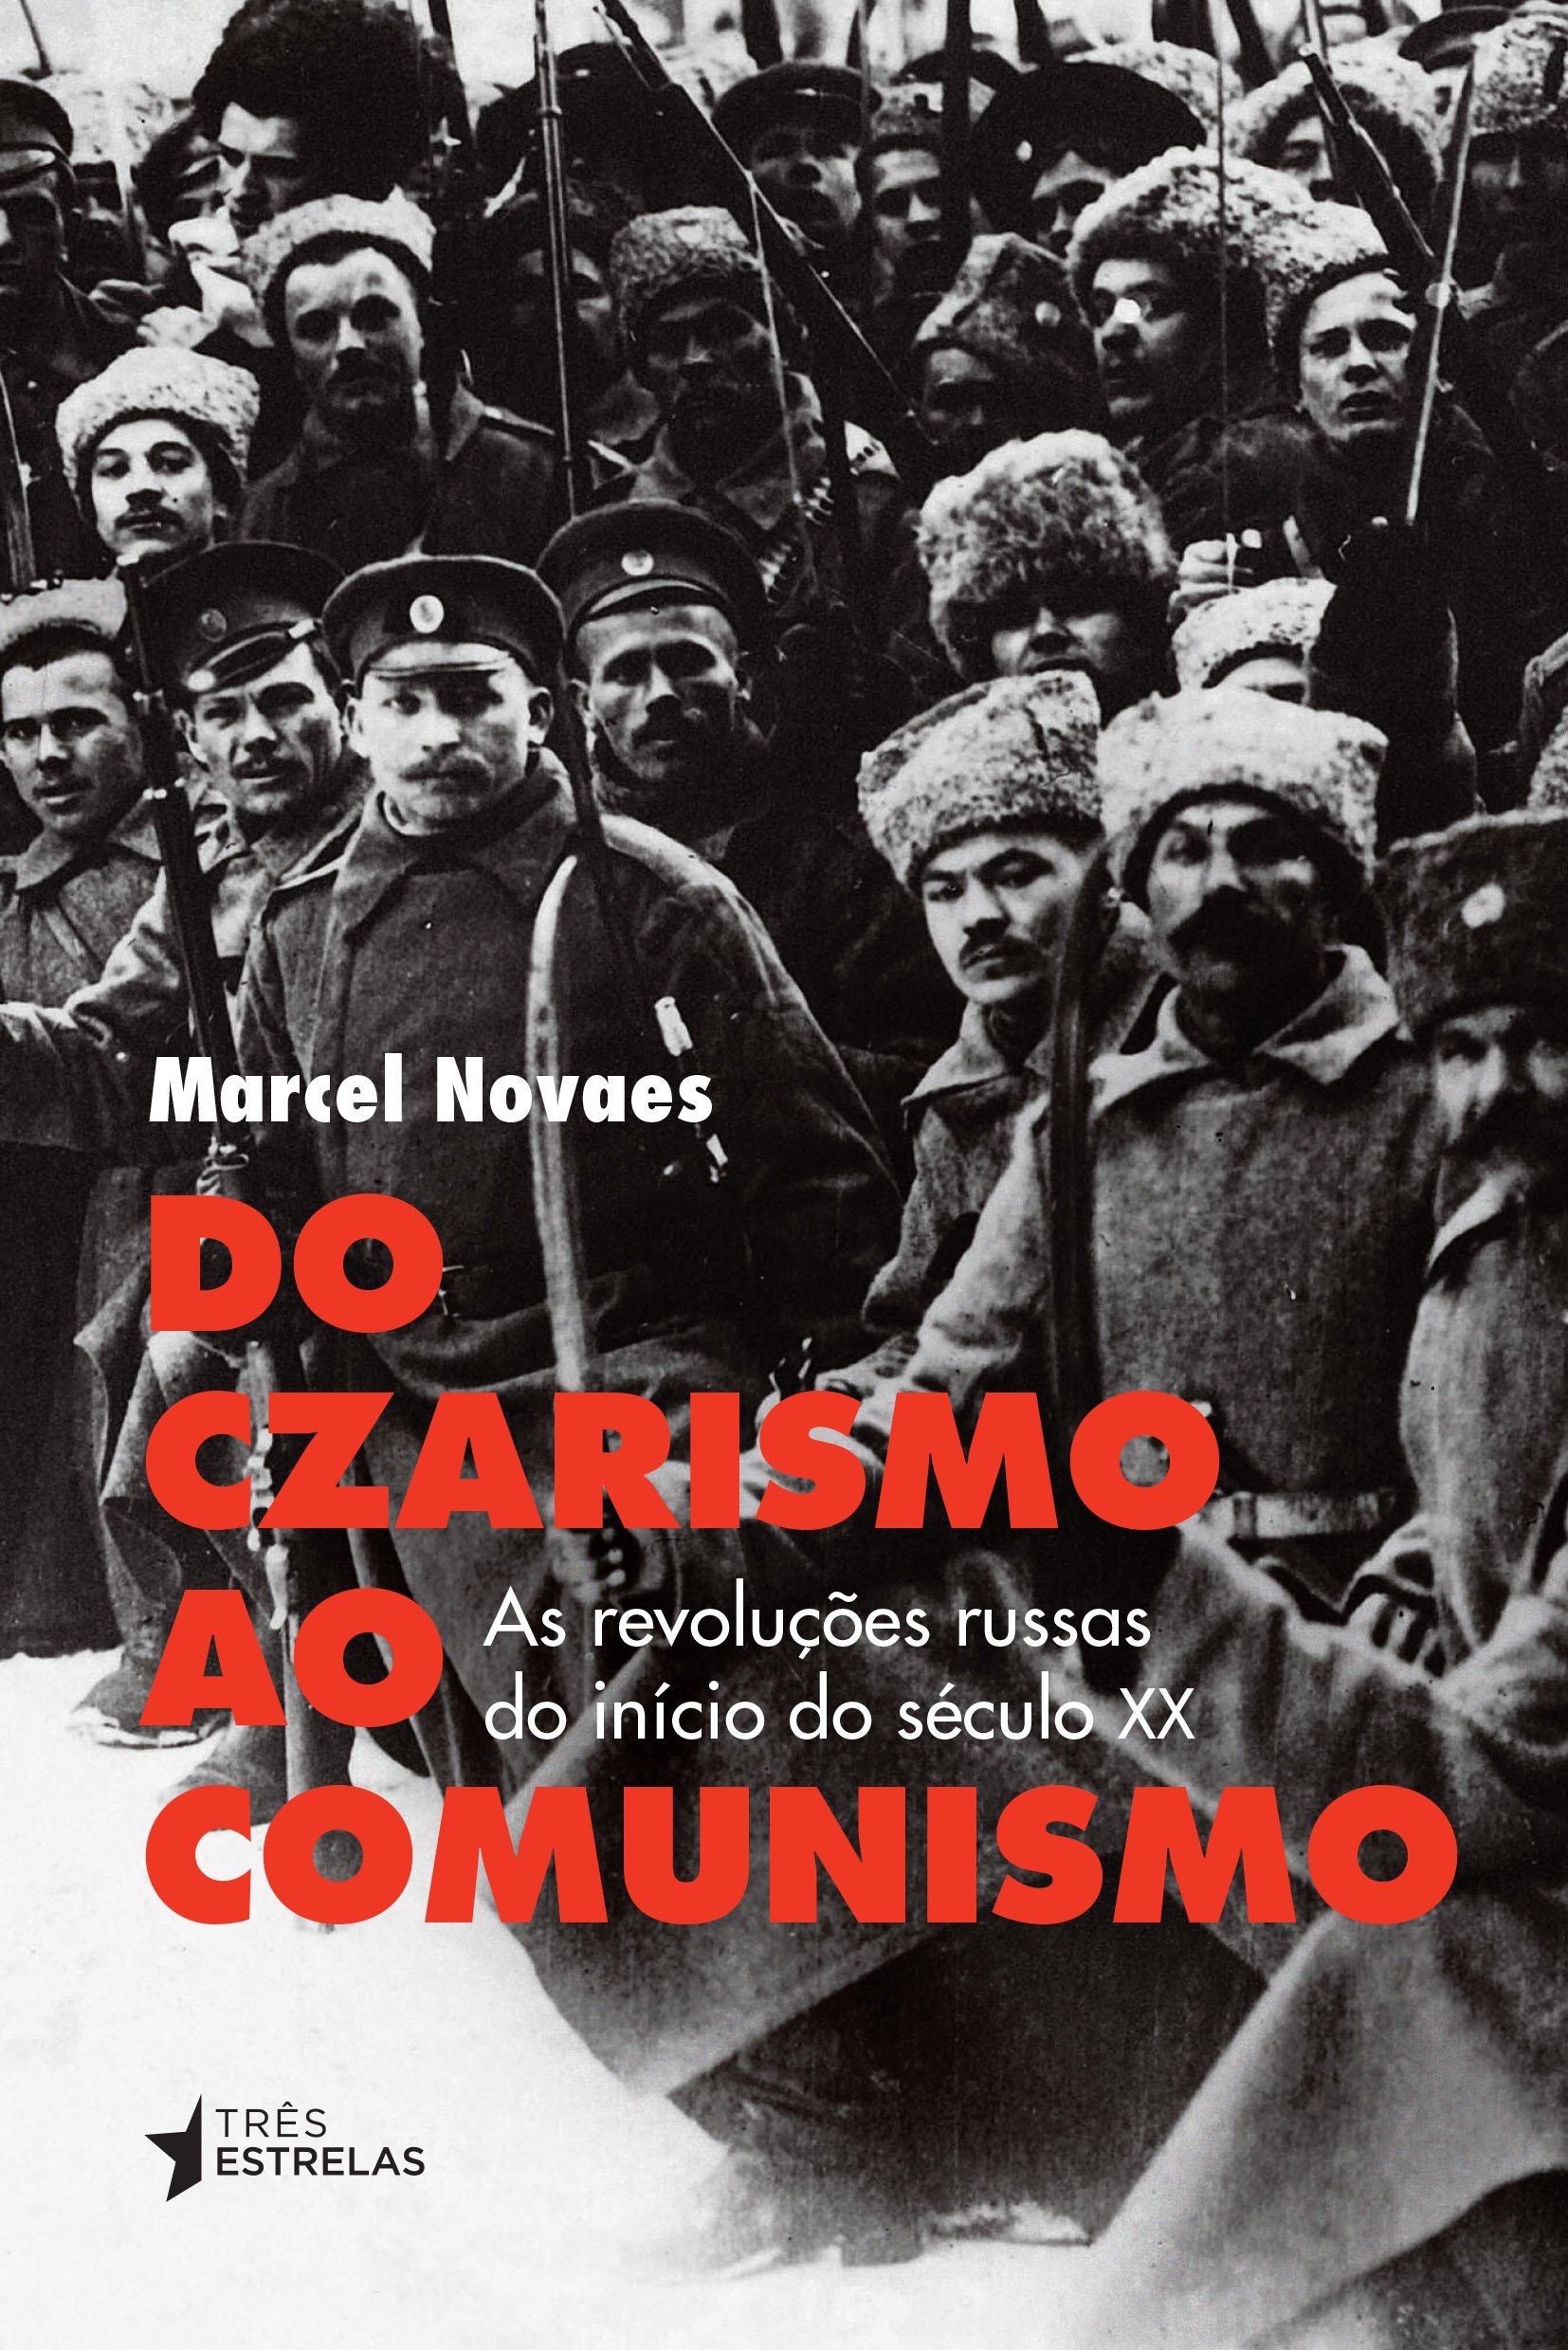 Do Czarismo ao Comunismo - As revoluções russas do início do século XX - Marcel Novaes